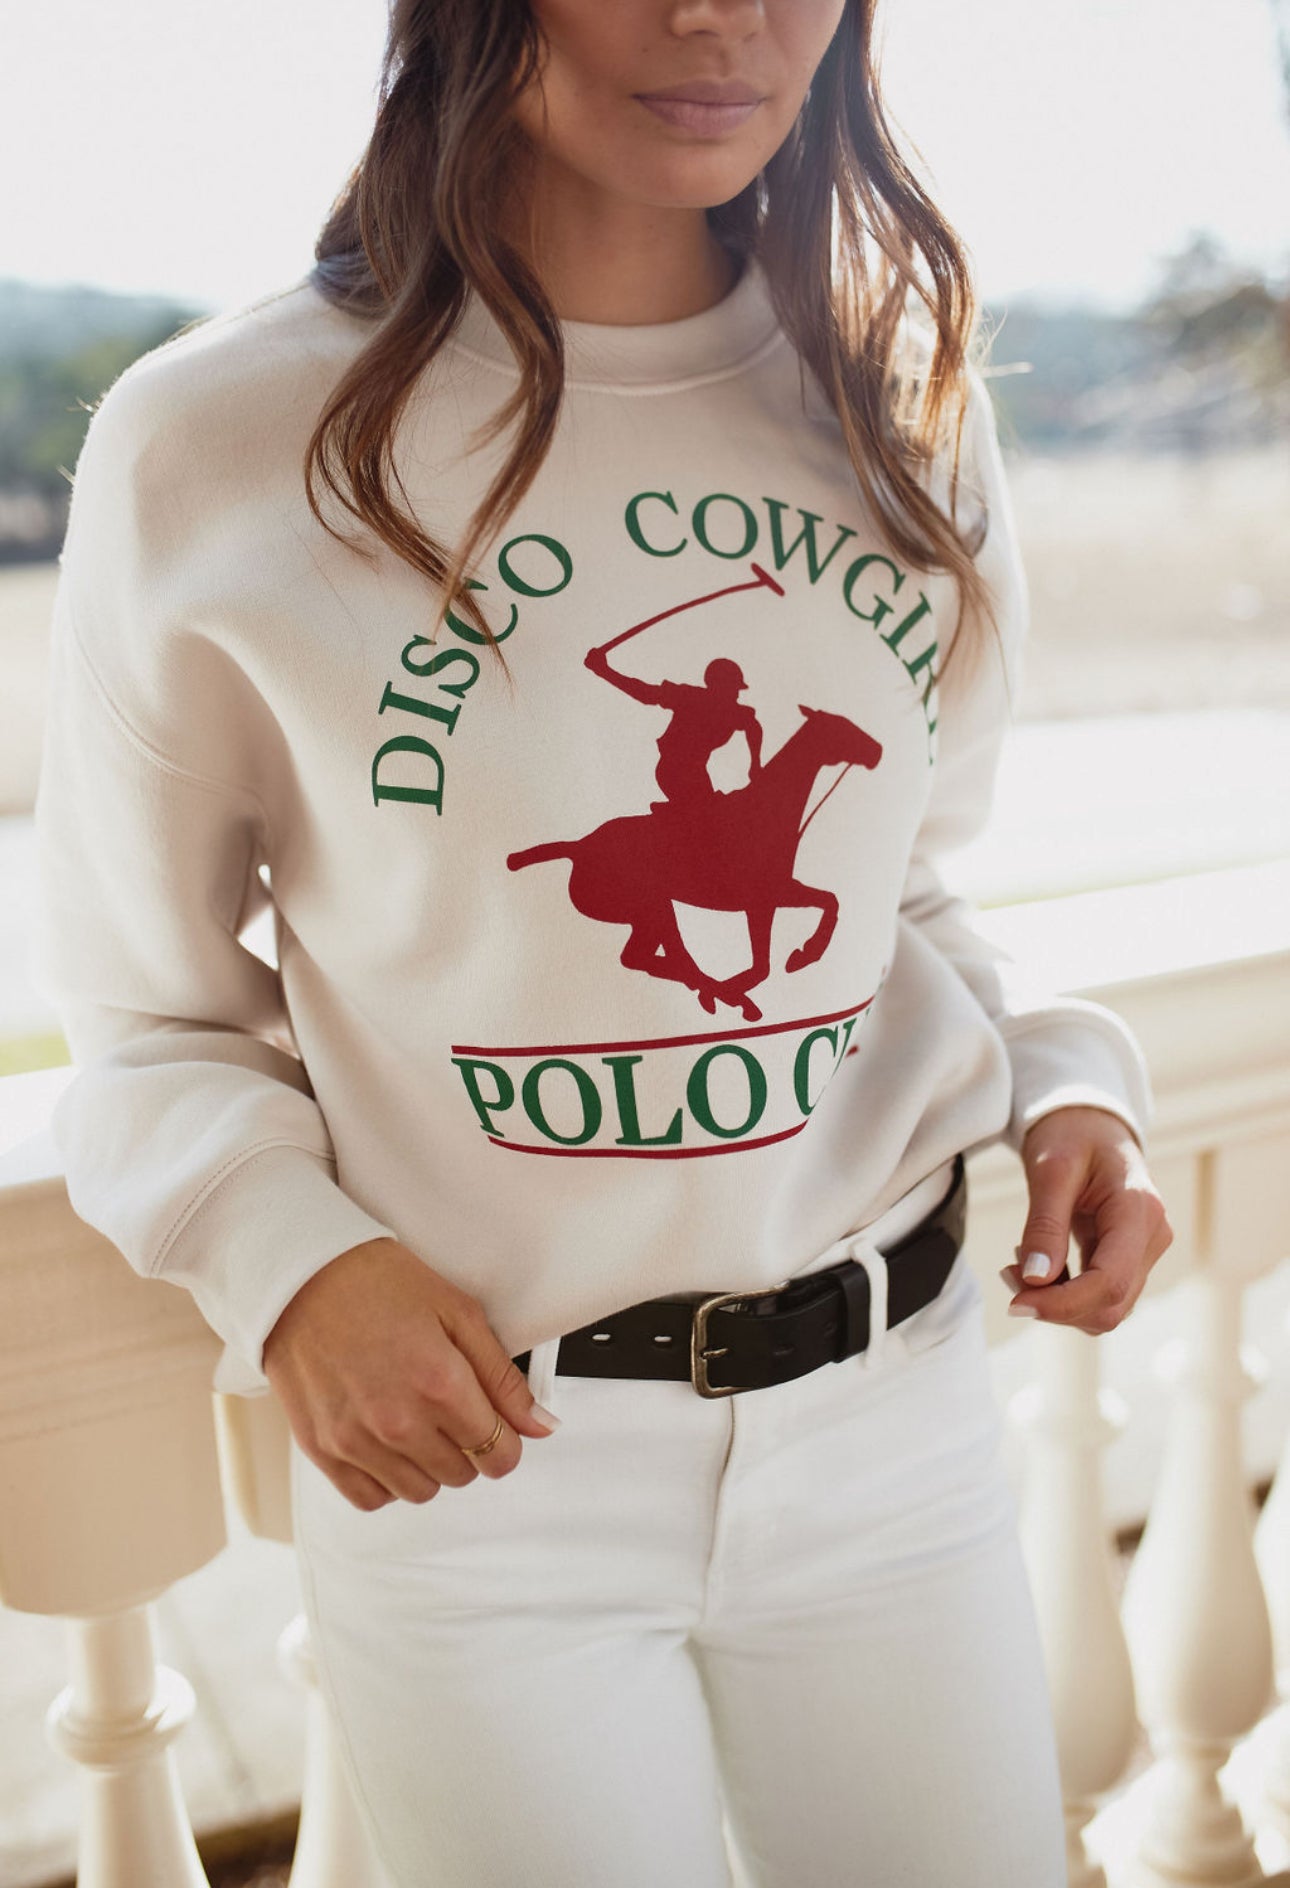 Polo Club Pullover